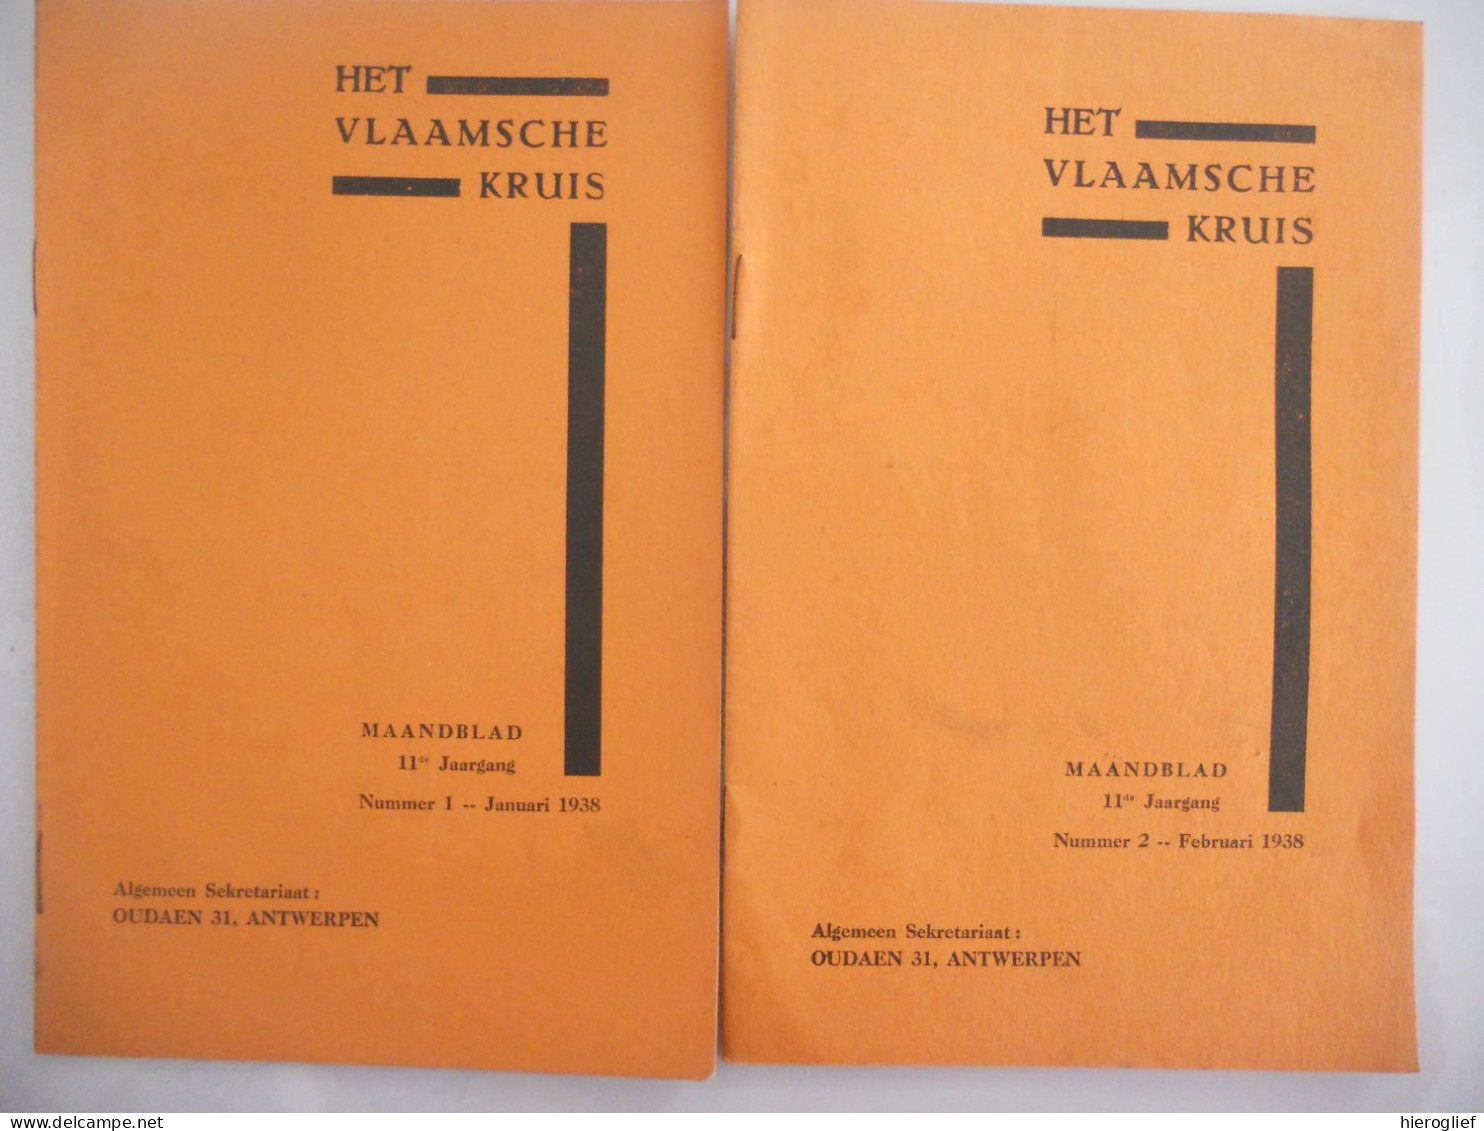 HET VLAAMSCHE KRUIS - Maandblad 1938 Nr 1 + 2 - Secretariaat Oudaen 31 Antwerpen / Vlaams Kruis EHBO Gezondheid Medisch - Practical